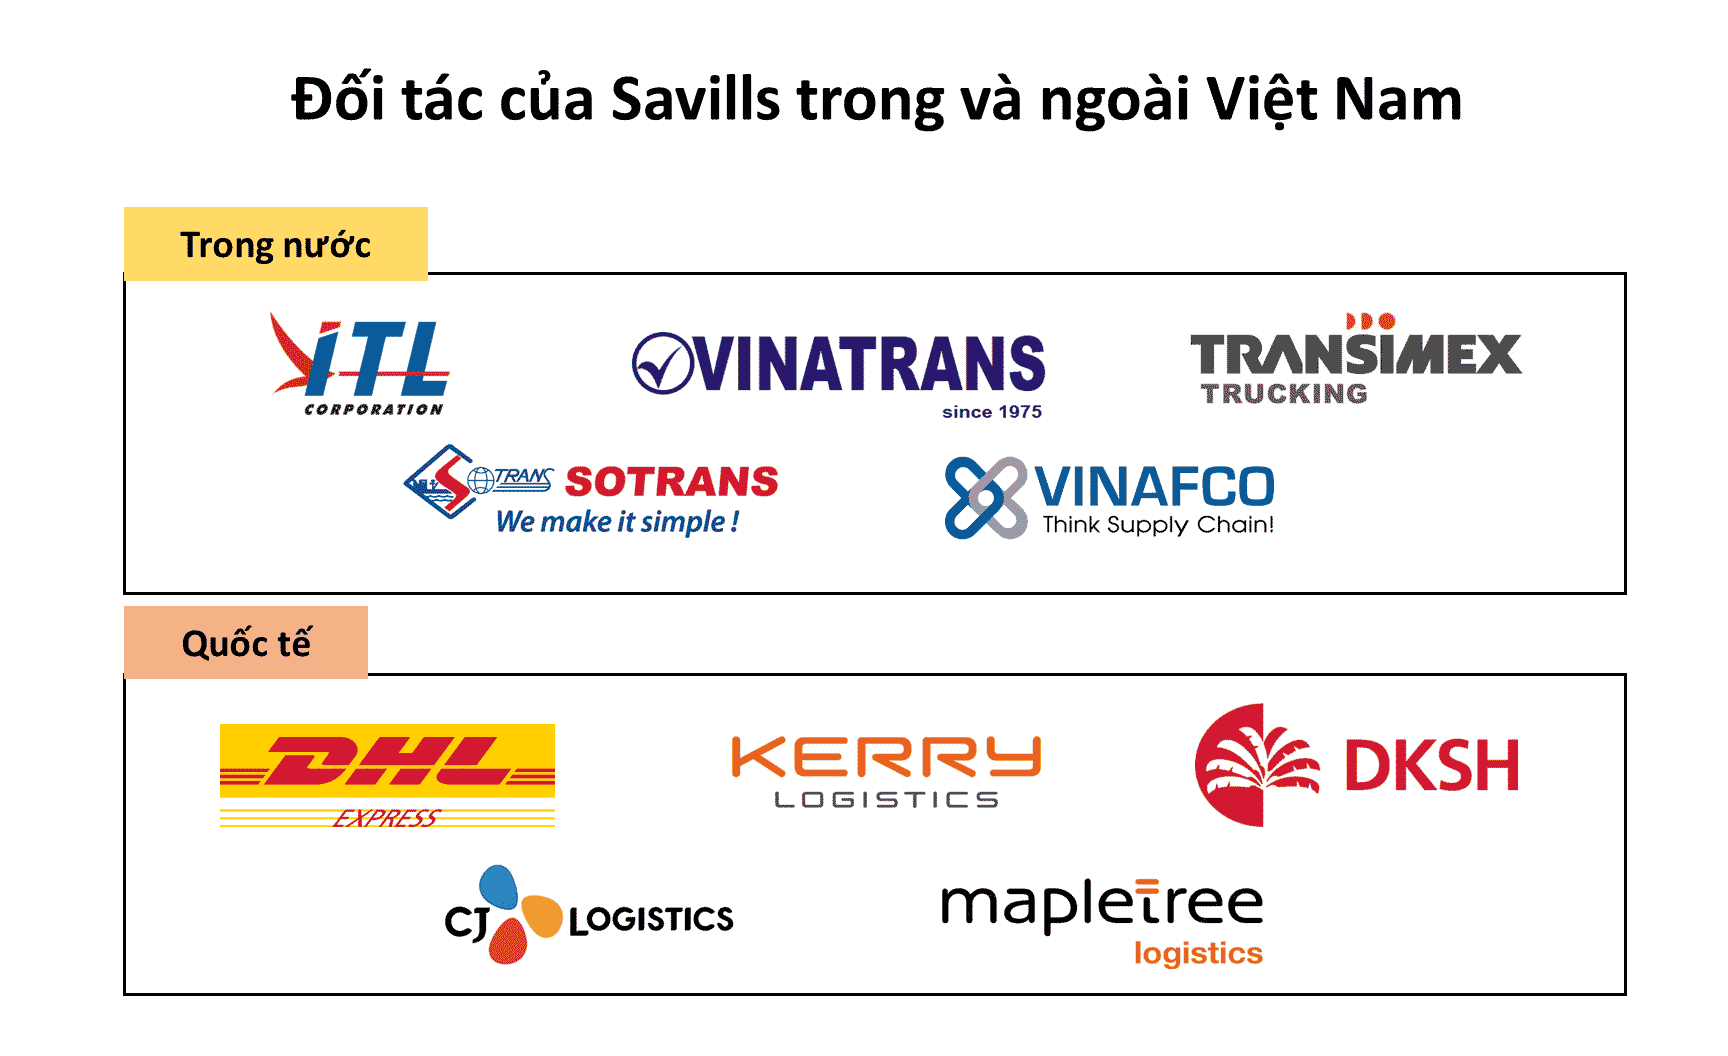 https://industrial.savills.com.vn/wp-content/uploads/2021/12/doi-tac-cua-Savills-trong-va-ngoai-nuoc.png